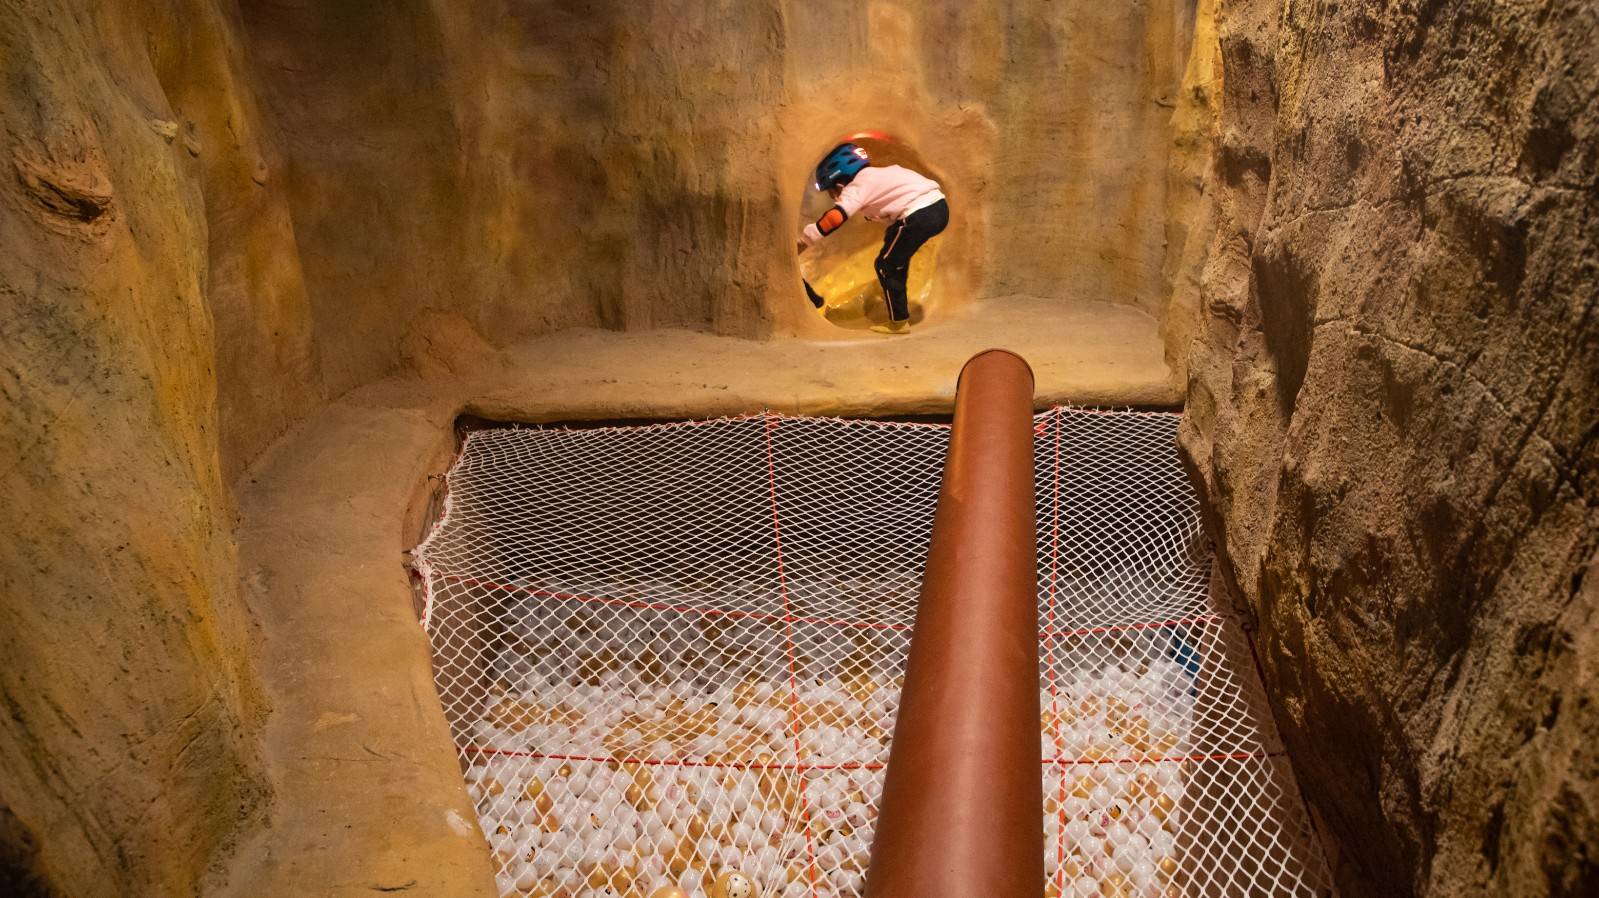 【龙华星河cococity】洞穴探险，趣味遛娃！88元起抢『 魔法谷探洞公园』套票：一区空中穿越+二区森林探险；超长洞线，沉浸式游玩！多场景变幻，给孩子打造一场奇趣冒险！